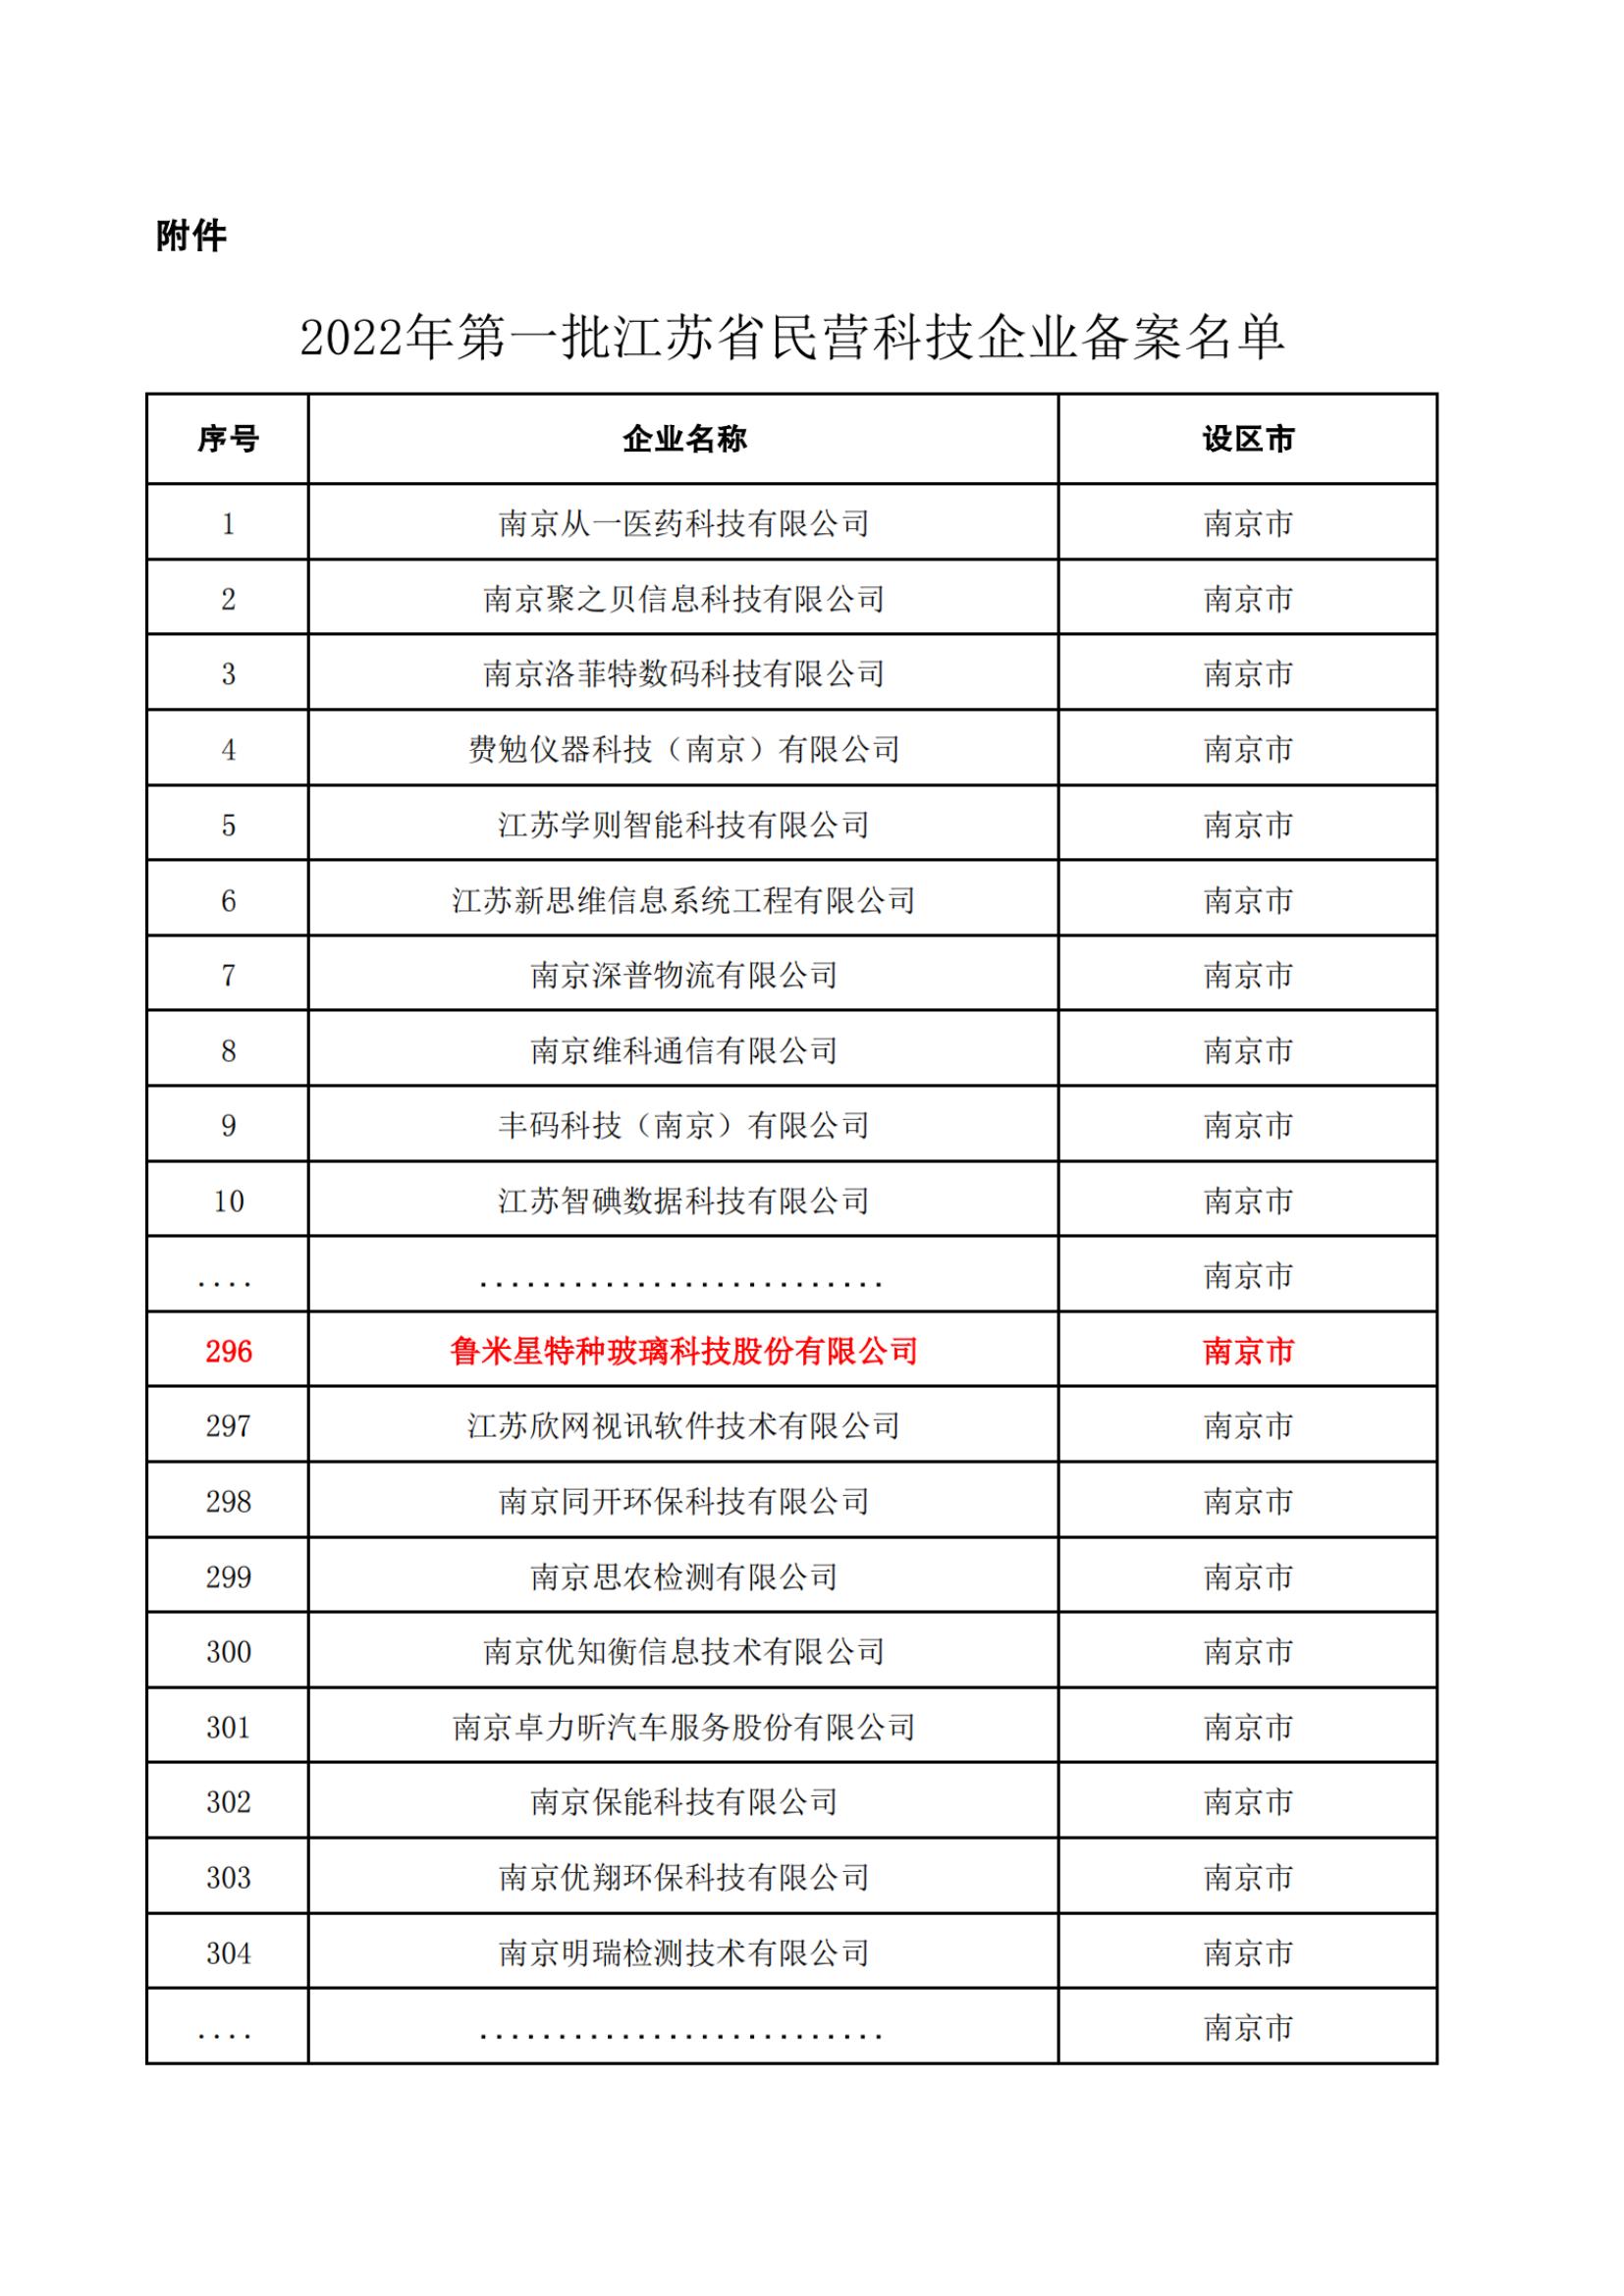 2022年第一批江苏省民营科技企业拟备案名单2523家_纯图版_00.jpg